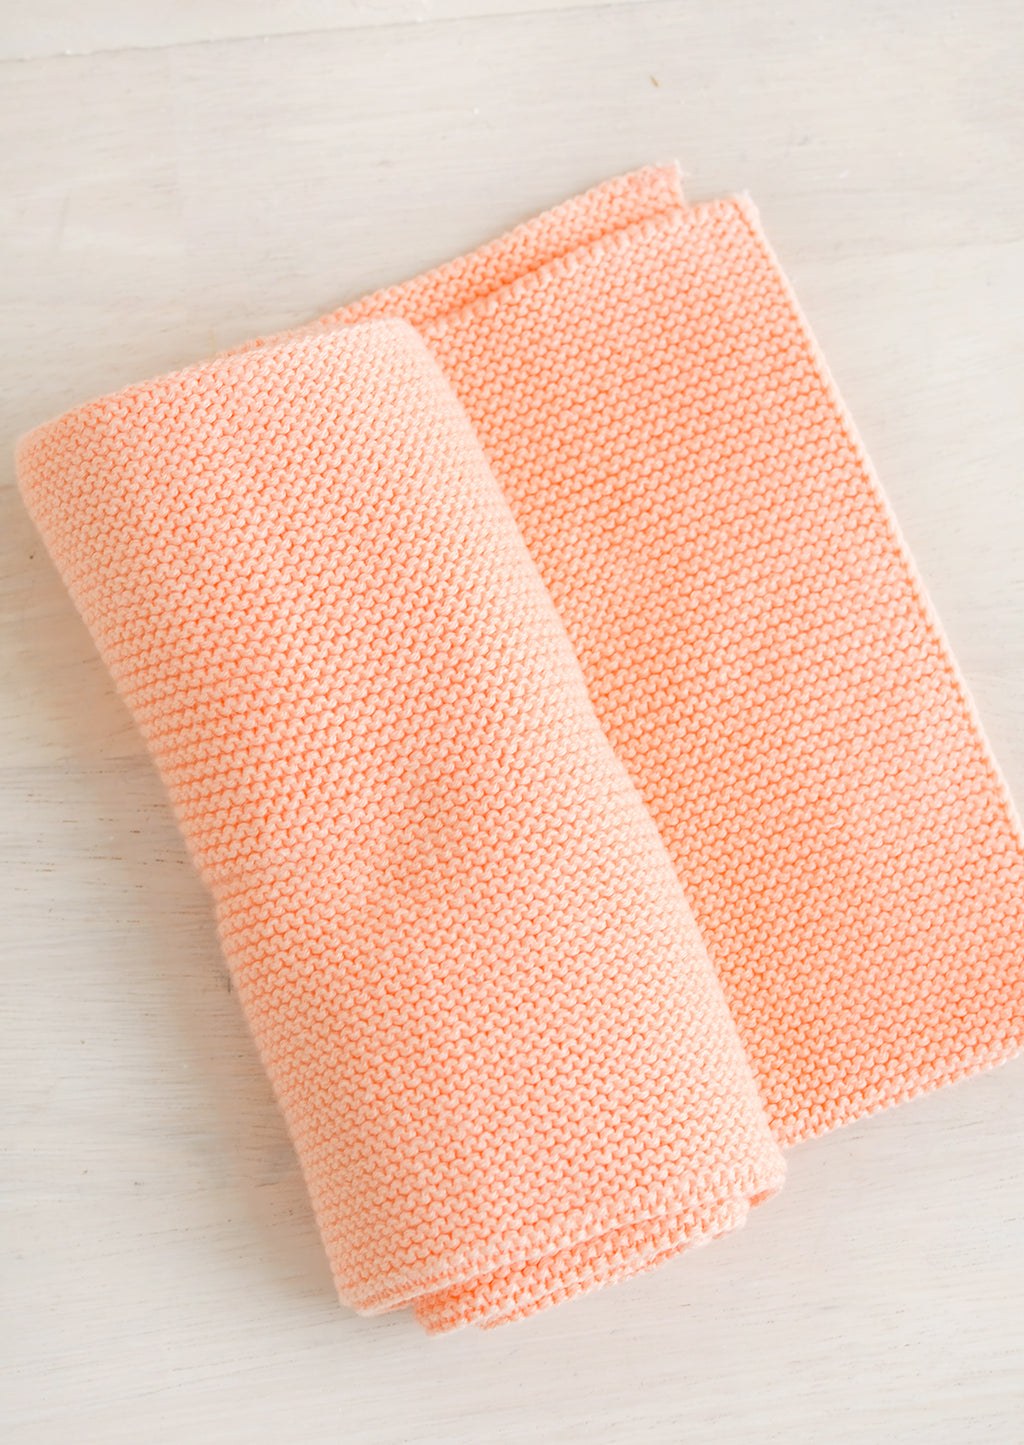 Papaya: A knit cotton dish towel in papaya pink.